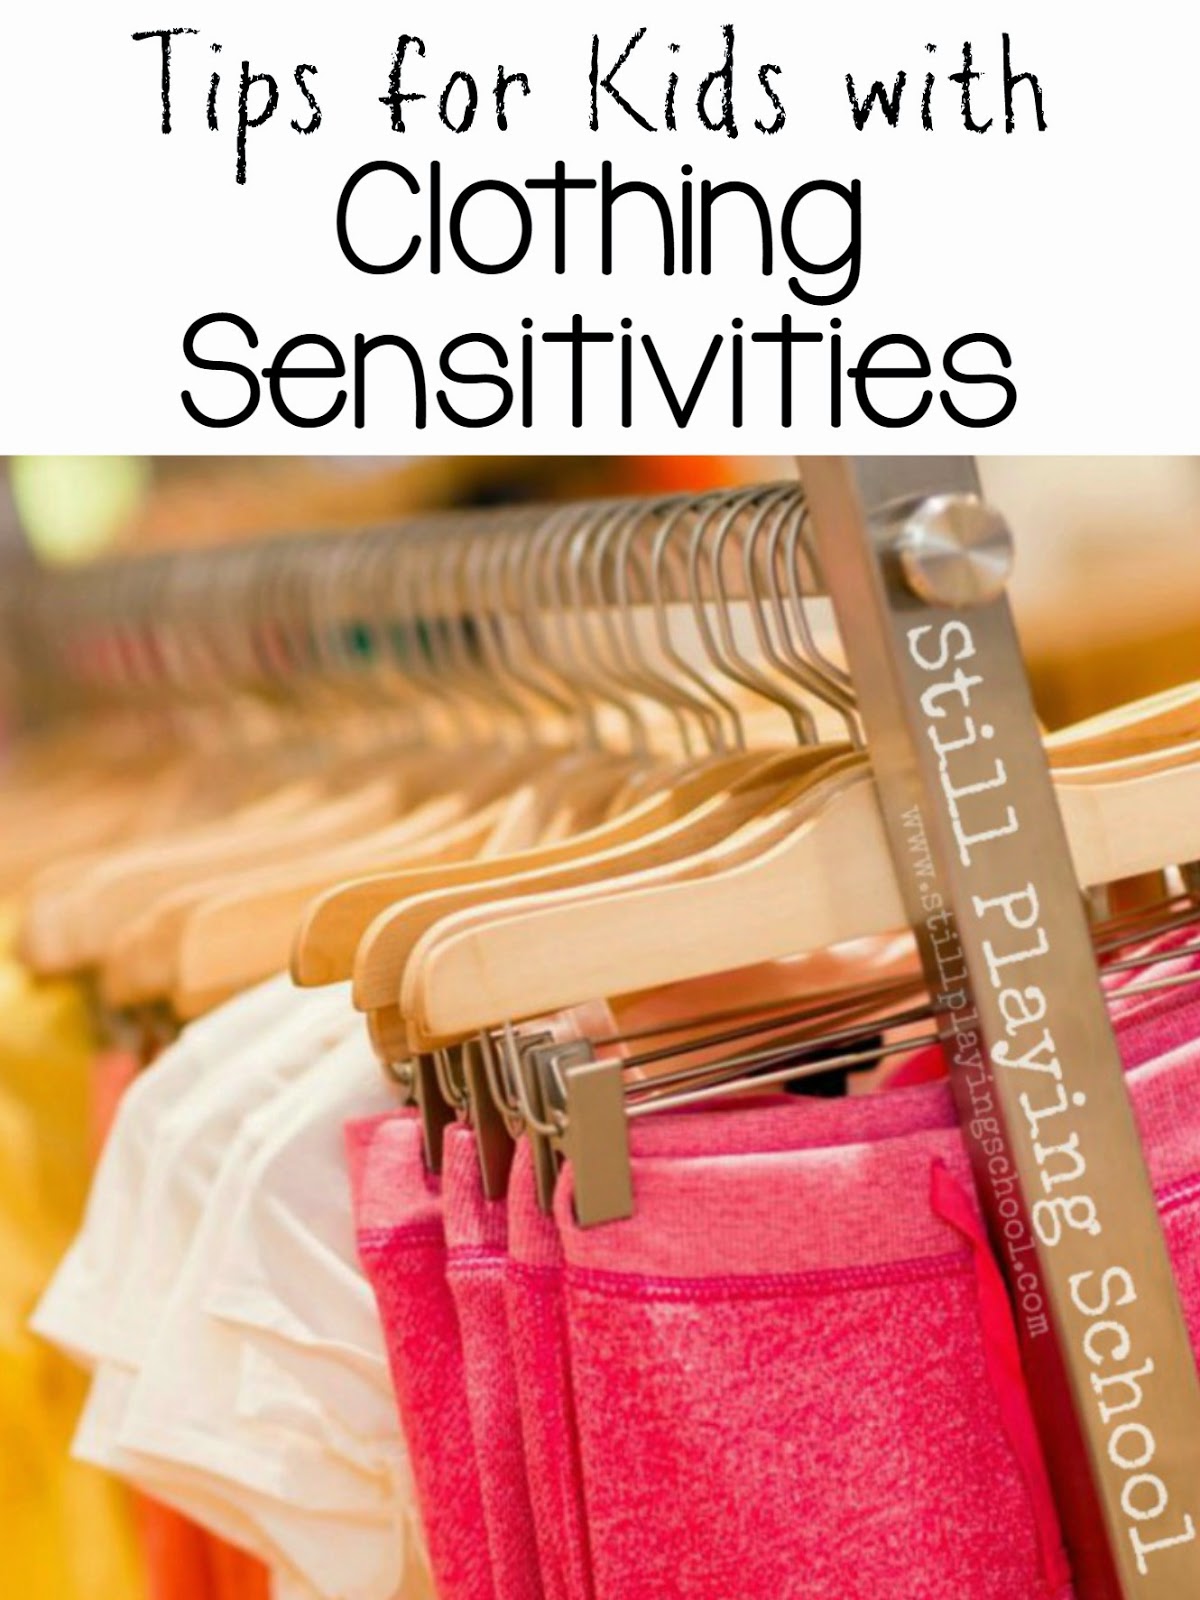 http://2.bp.blogspot.com/-7R0IErHnKHU/VEcHrE7UxEI/AAAAAAAALBA/lUkCKk6GQhI/s1600/clothing-sensitivities-kids-sensory-tips.jpg